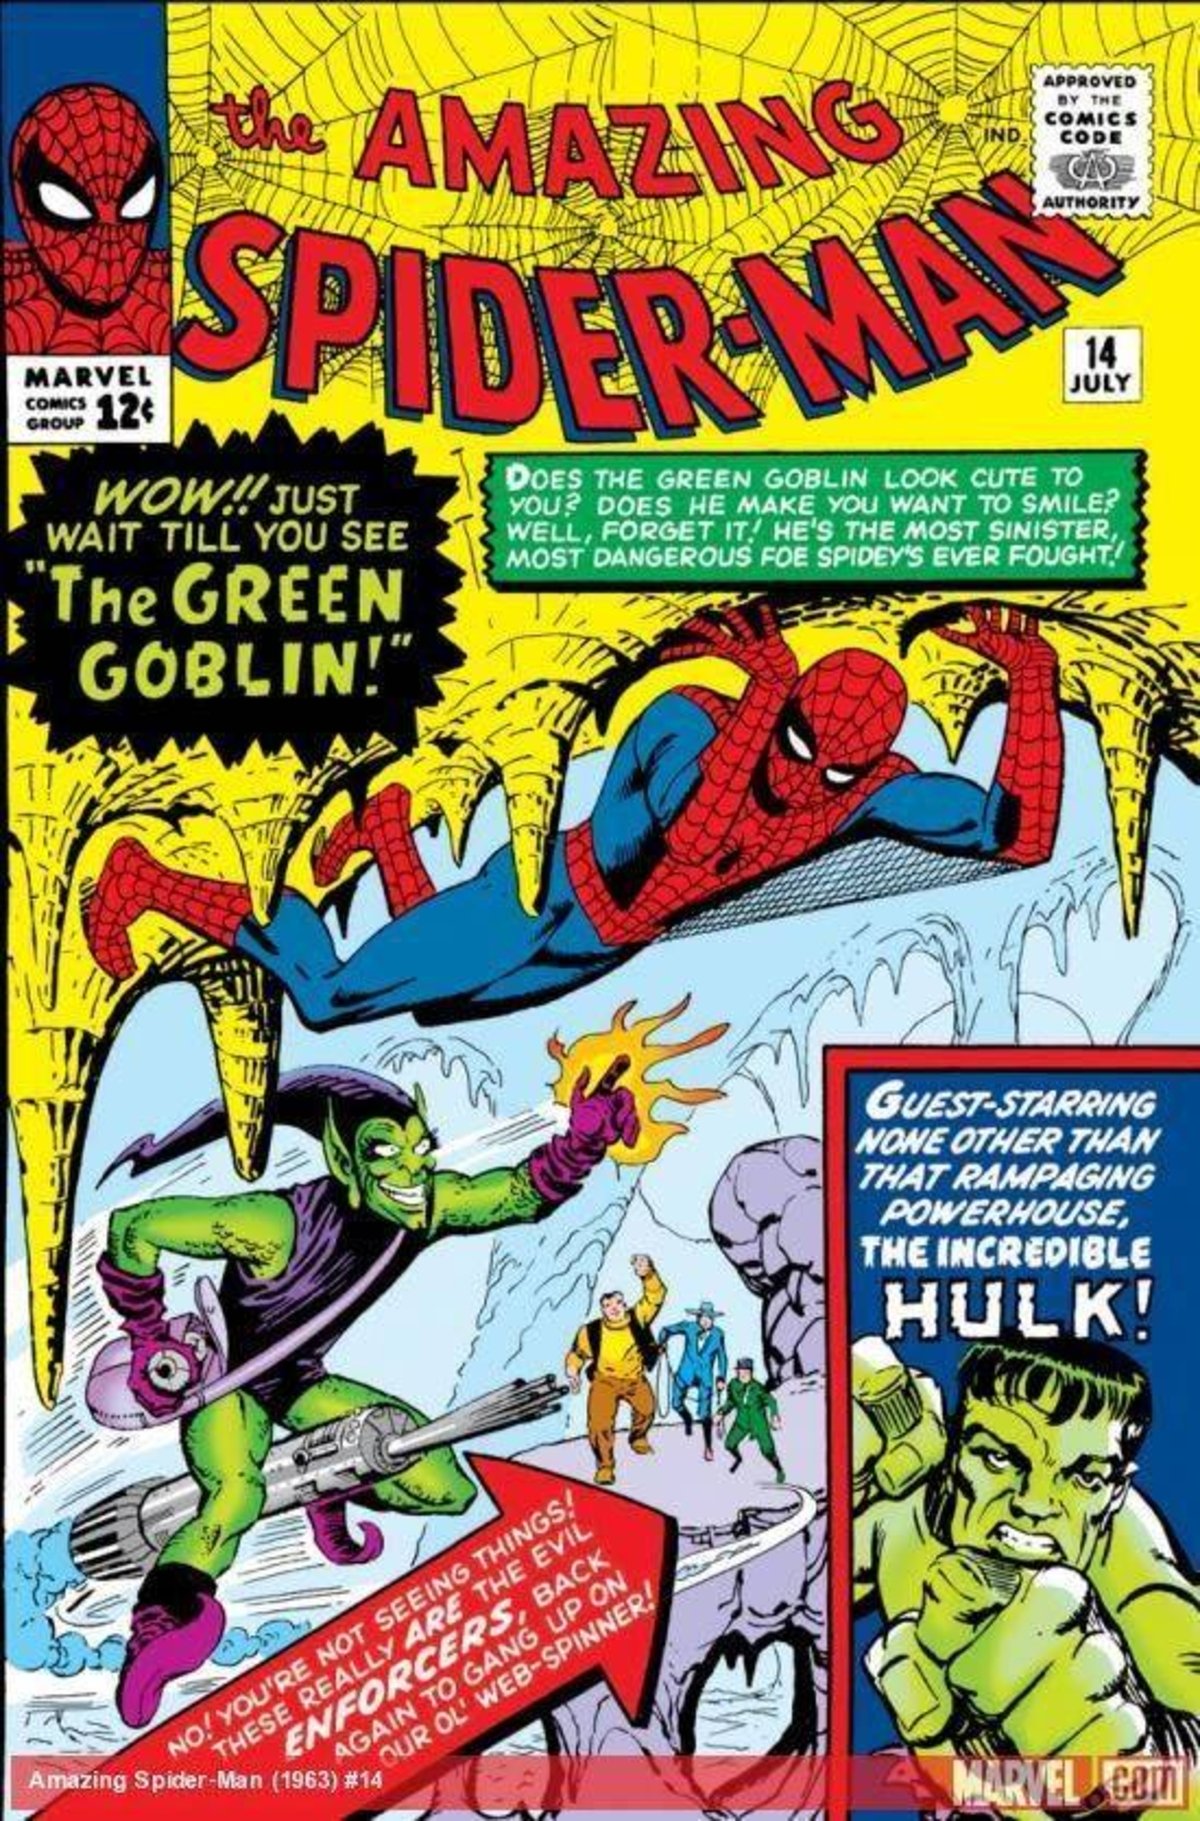 primer comic duende verde spider man